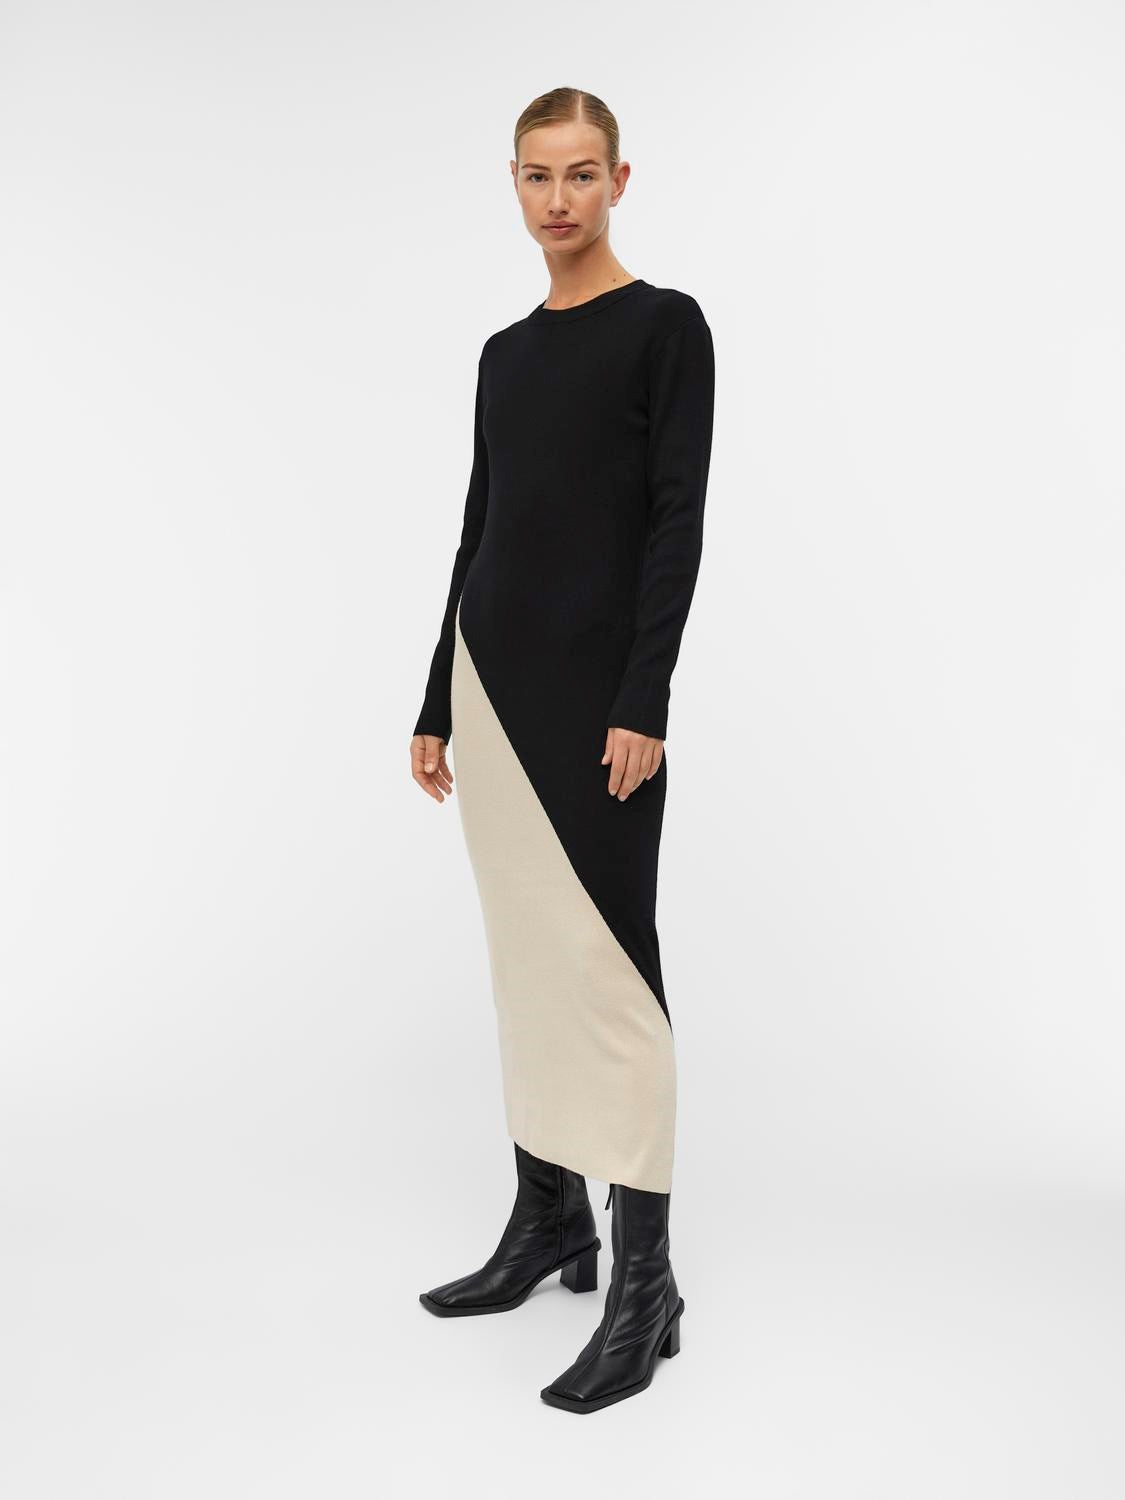 Ester Block Knit Dress (Black/Sandshell)